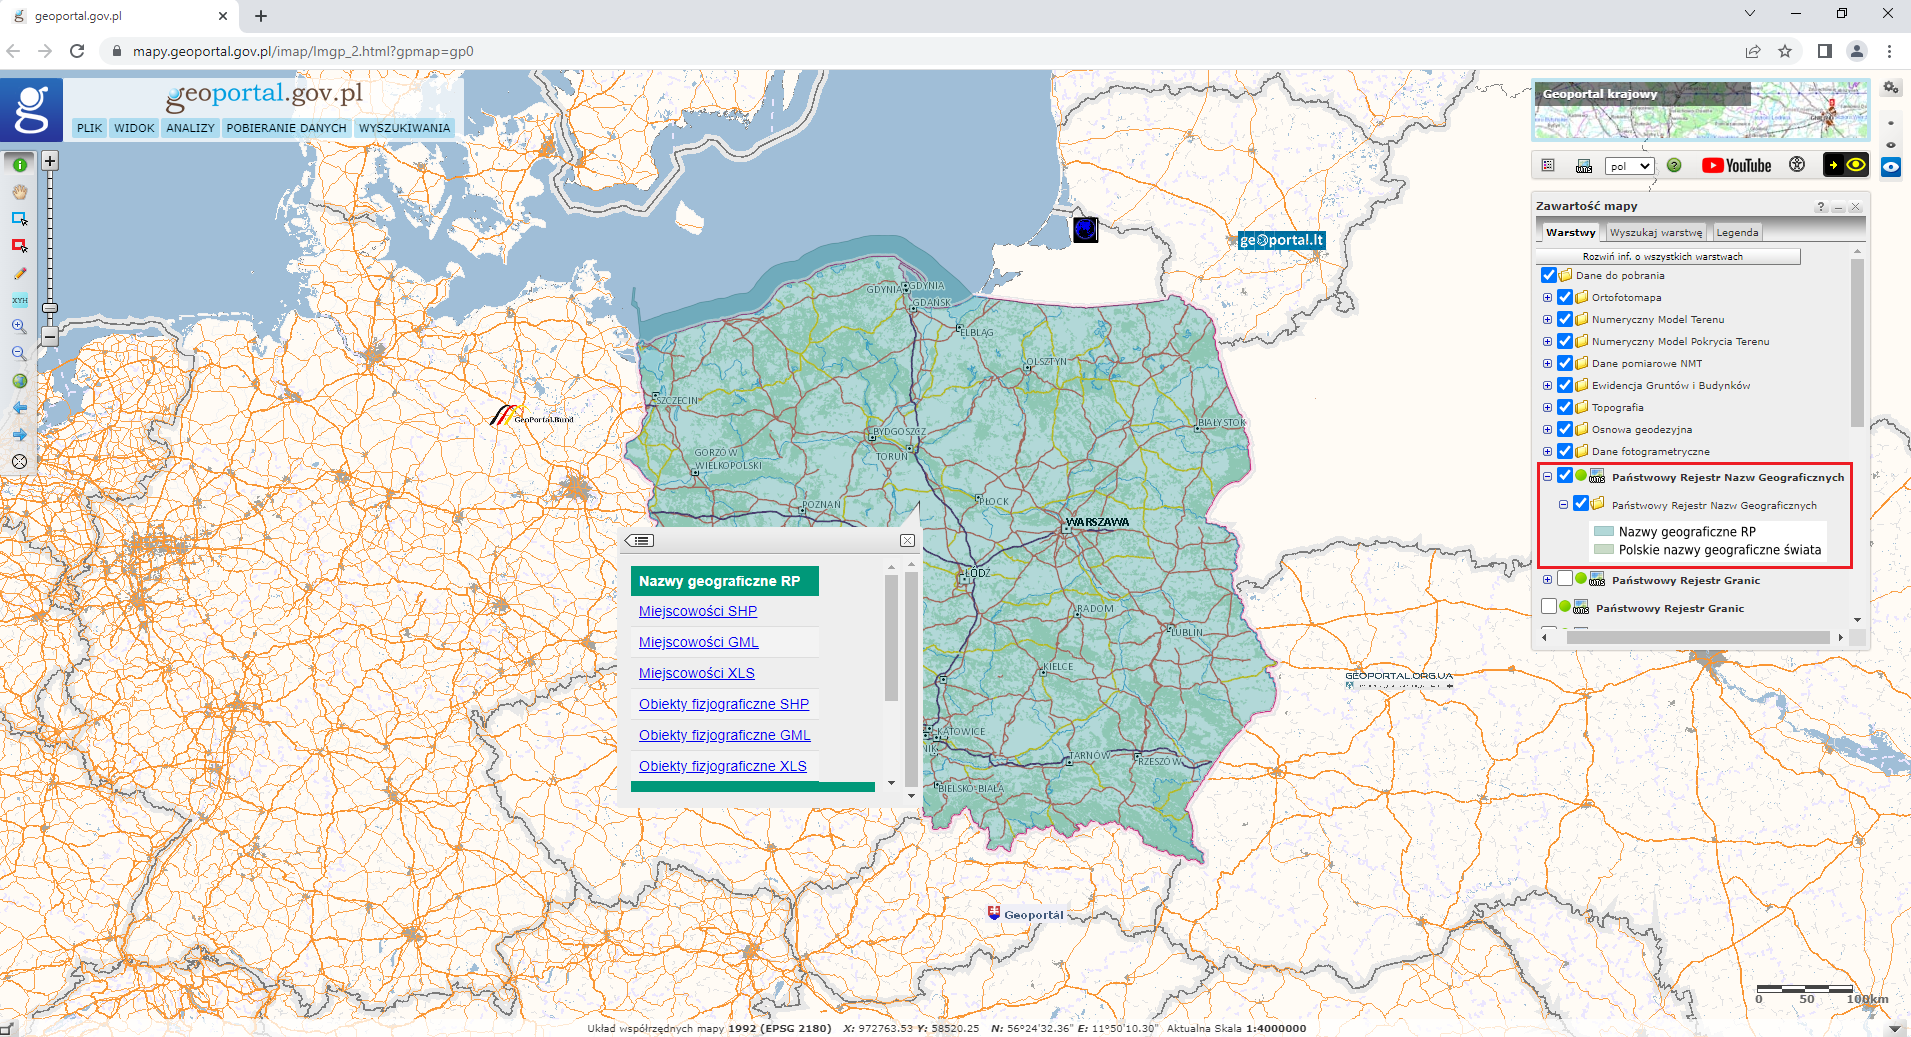 Ilustracja przedstawiająca zrzut ekranu z serwisu www.geoportal.gov.pl z uruchomioną usługą pobierania danych dotyczących nazw geograficznych RP.